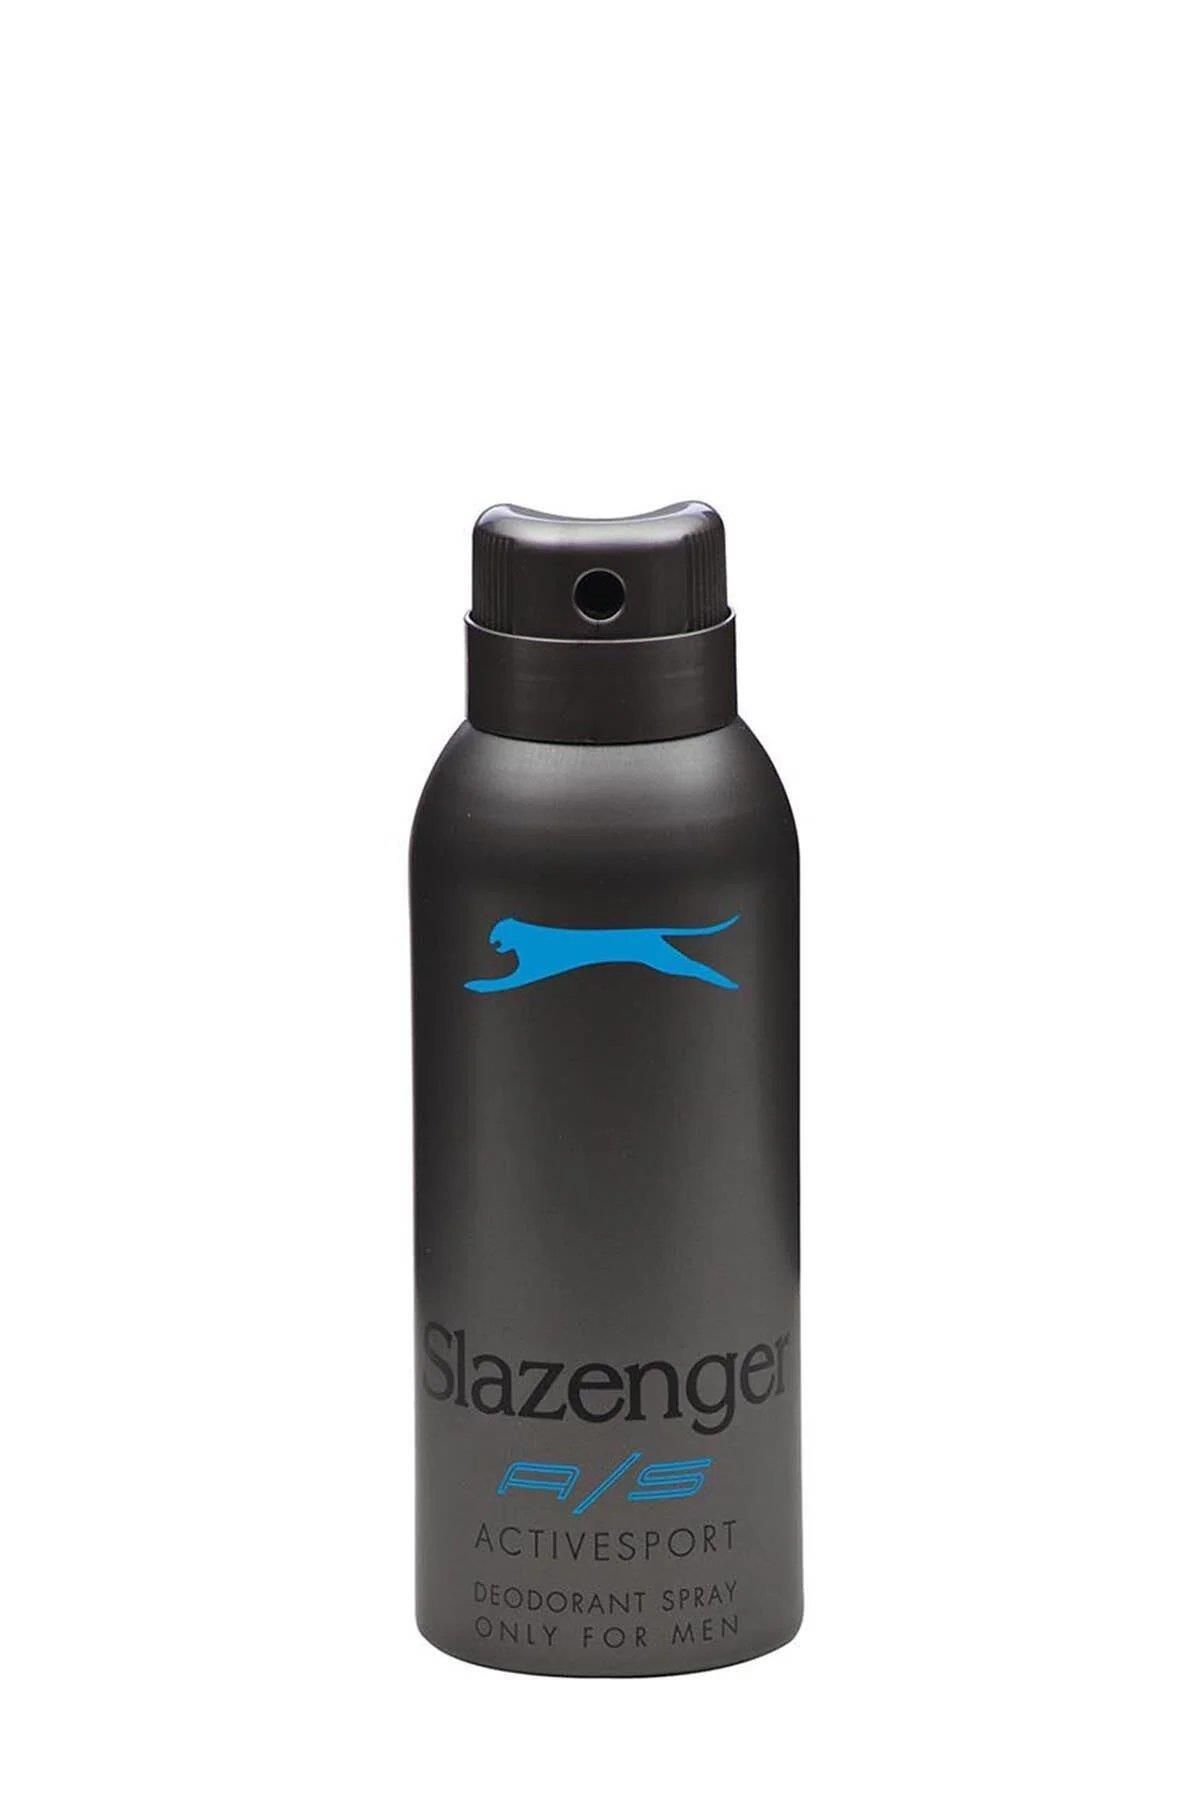 Slazenger Active Sport Erkek Deodorant Spray Mavi 150 ml